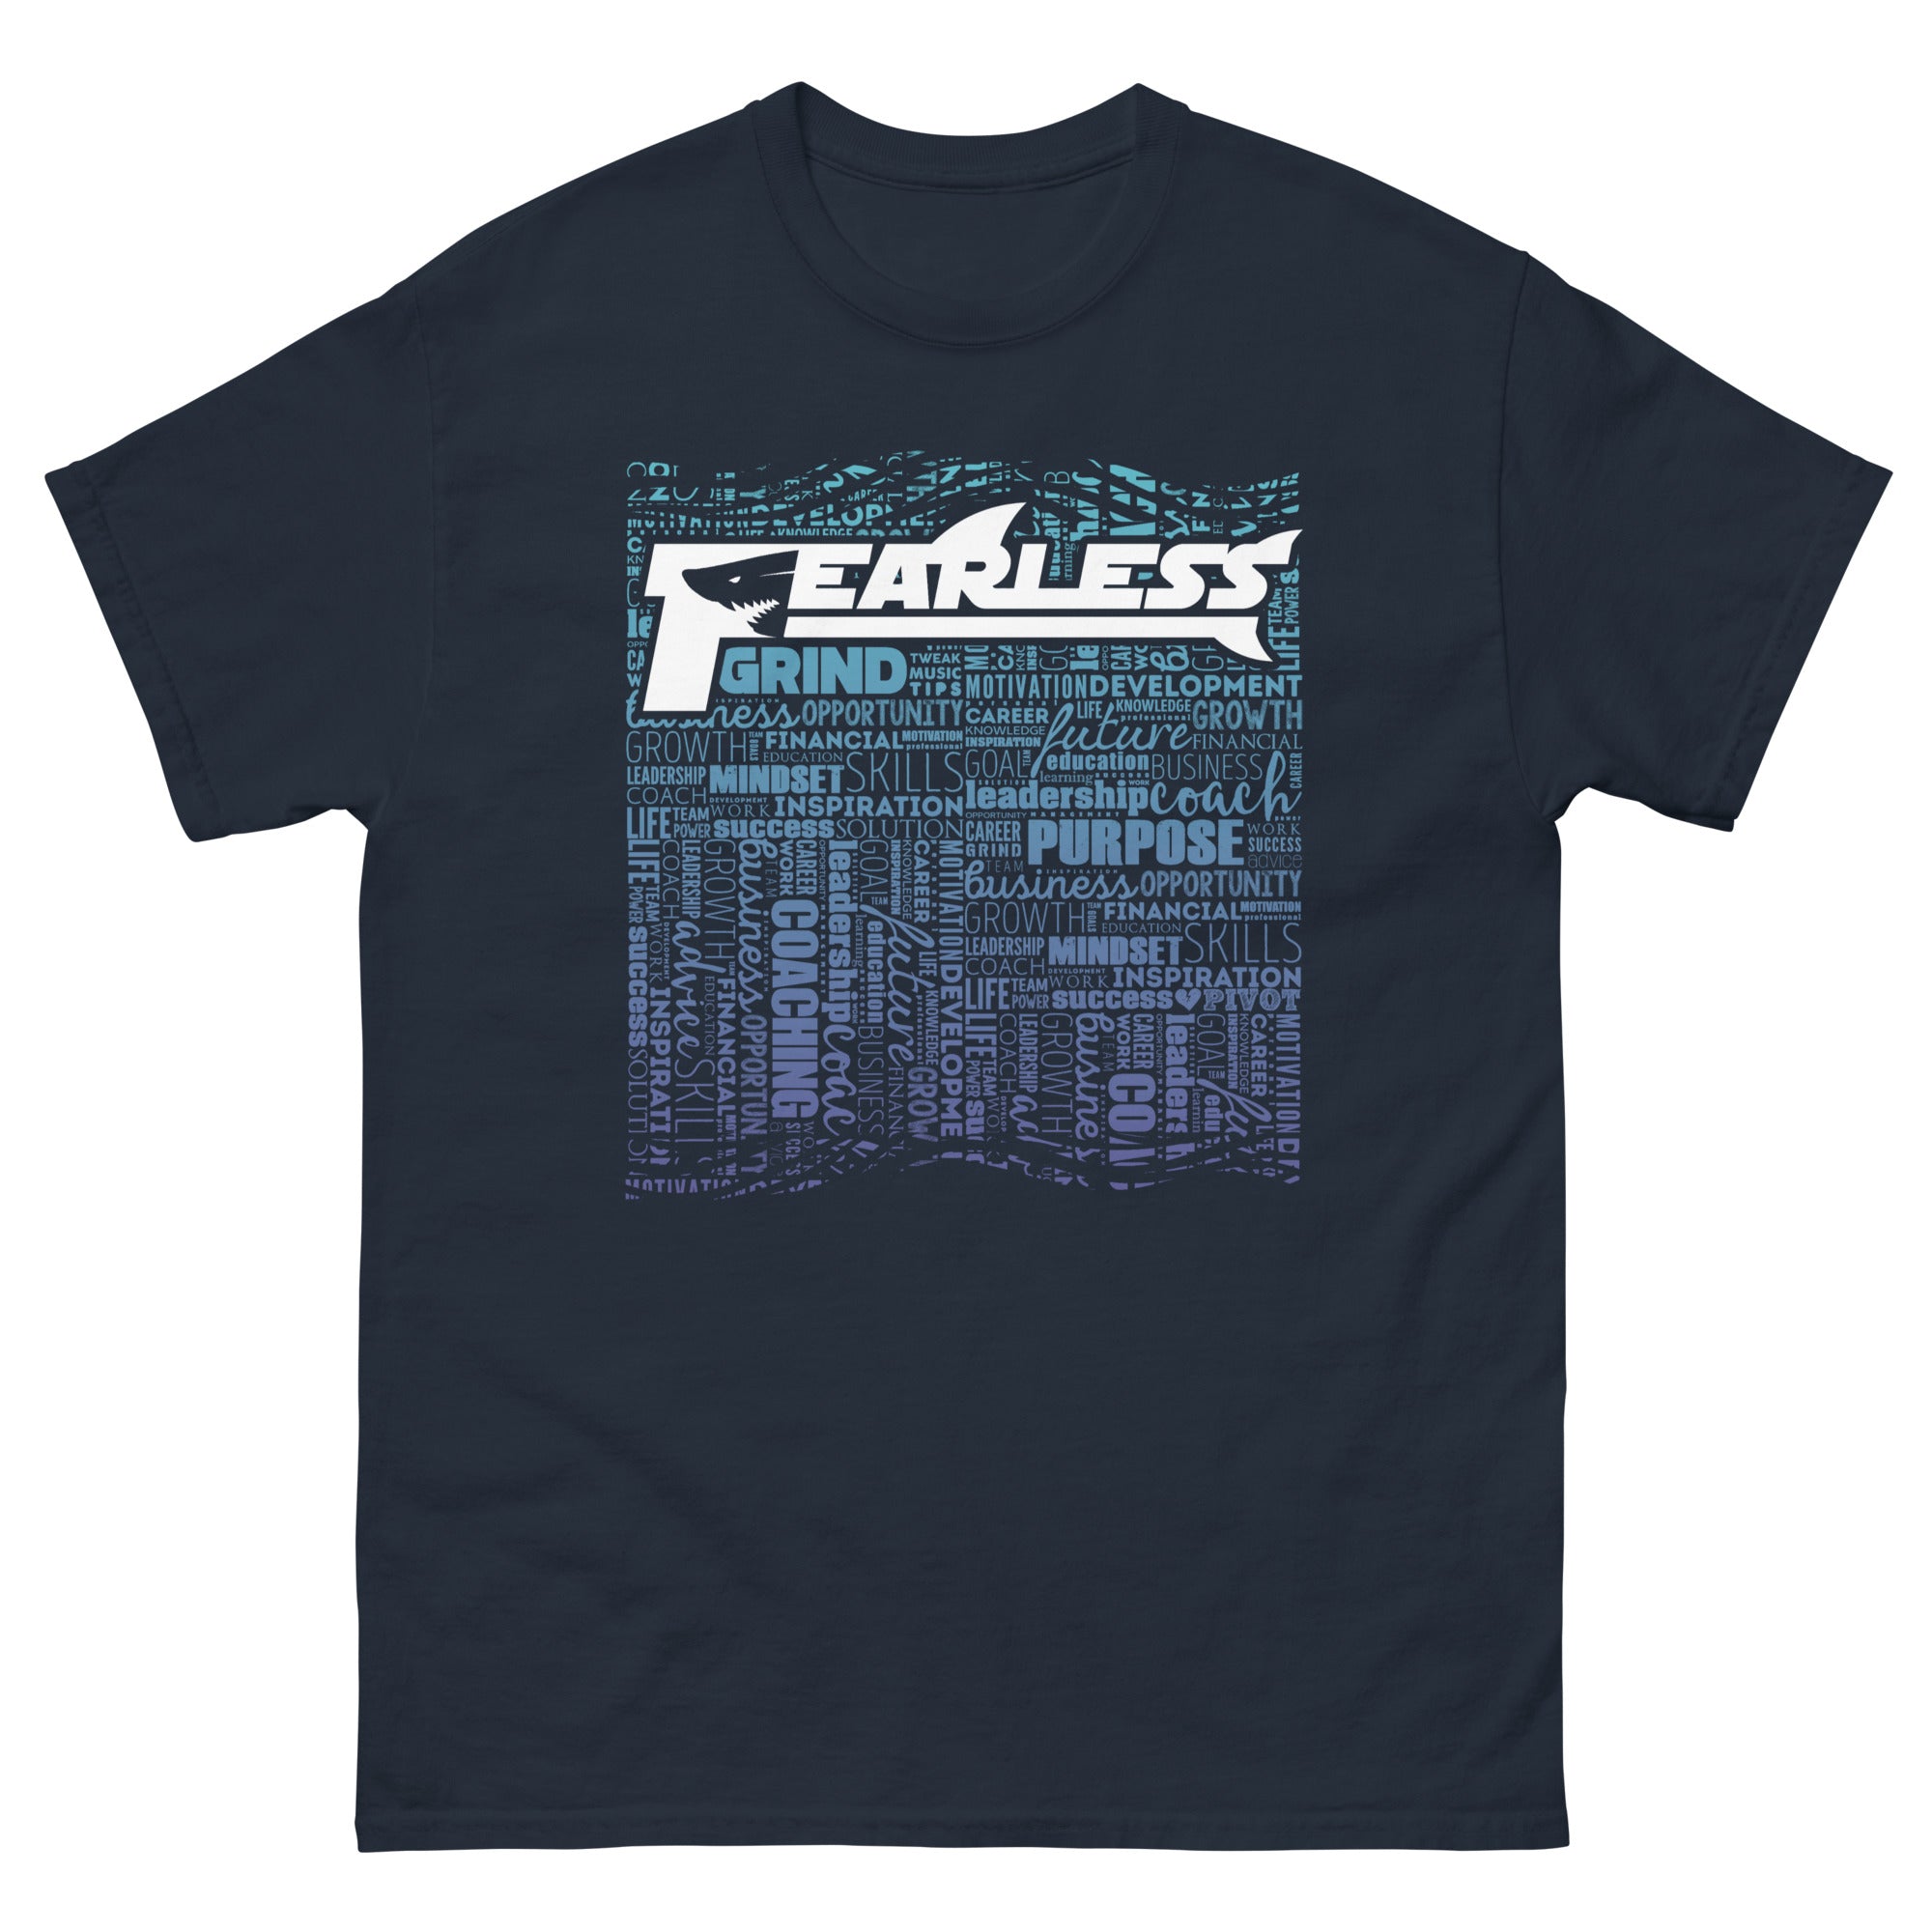 FEARLESS - Men's T-Shirt